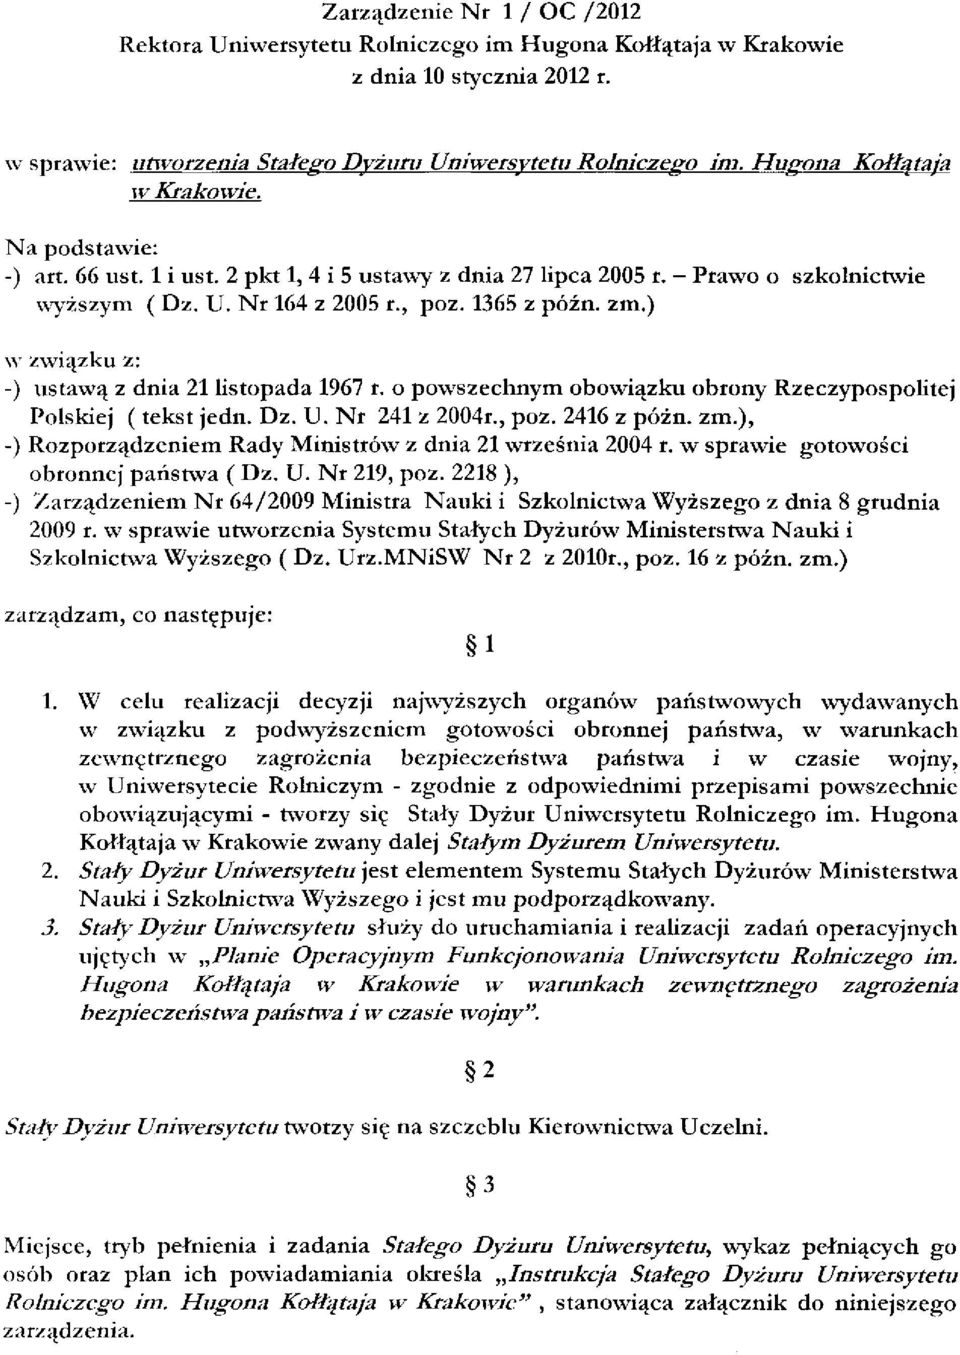 ) w związku z: -) ustawą z dnia 21 listopada 1967 r. o powszechnym obowiązku obrony Rzeczypospolitej Polskiej (tekst jedn. Dz. U. Nr 241 z 2004r., poz. 2416 z póżn. zm.